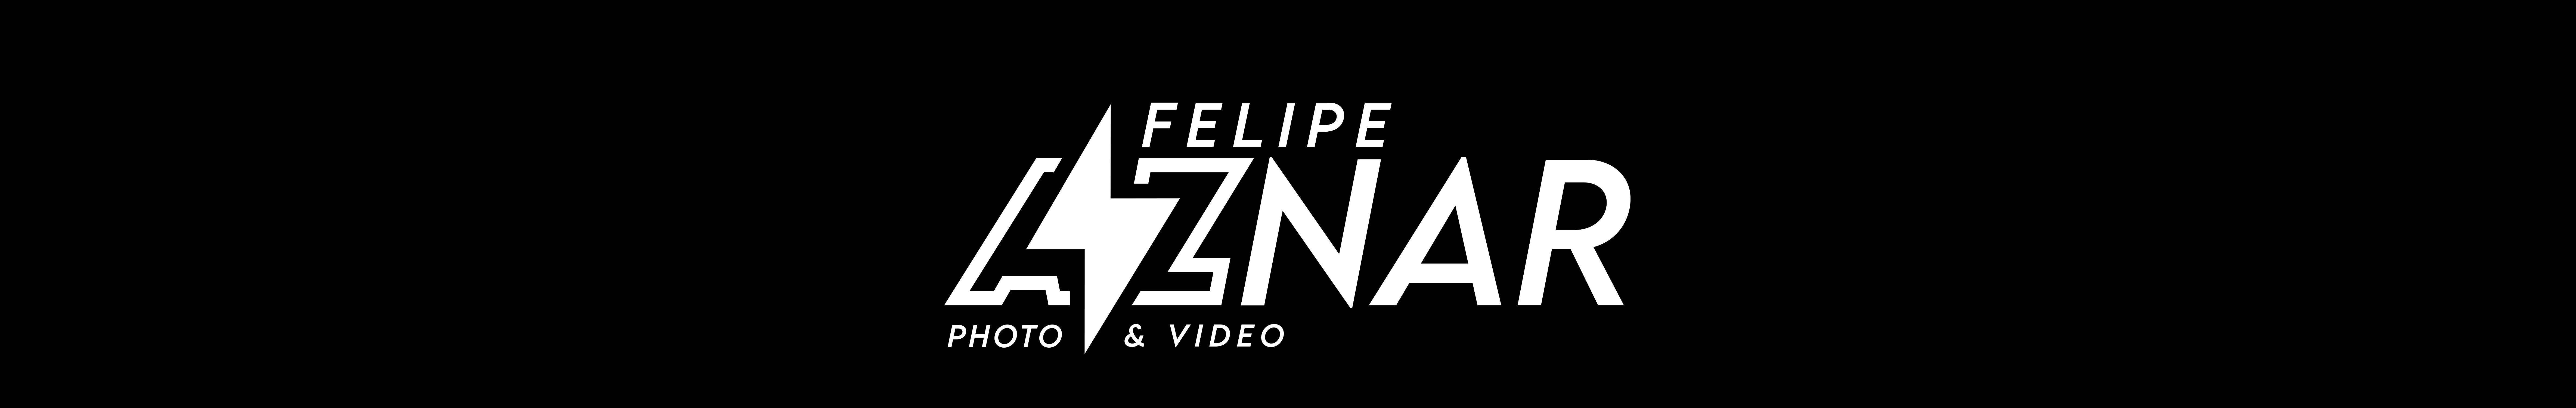 Banner del profilo di Felipe Aznar